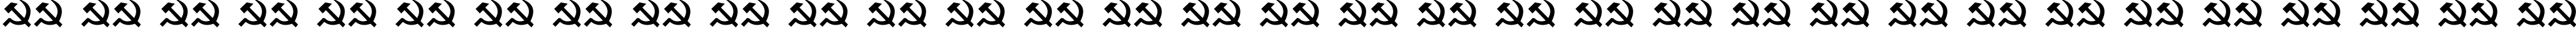 Пример написания русского алфавита шрифтом Castro